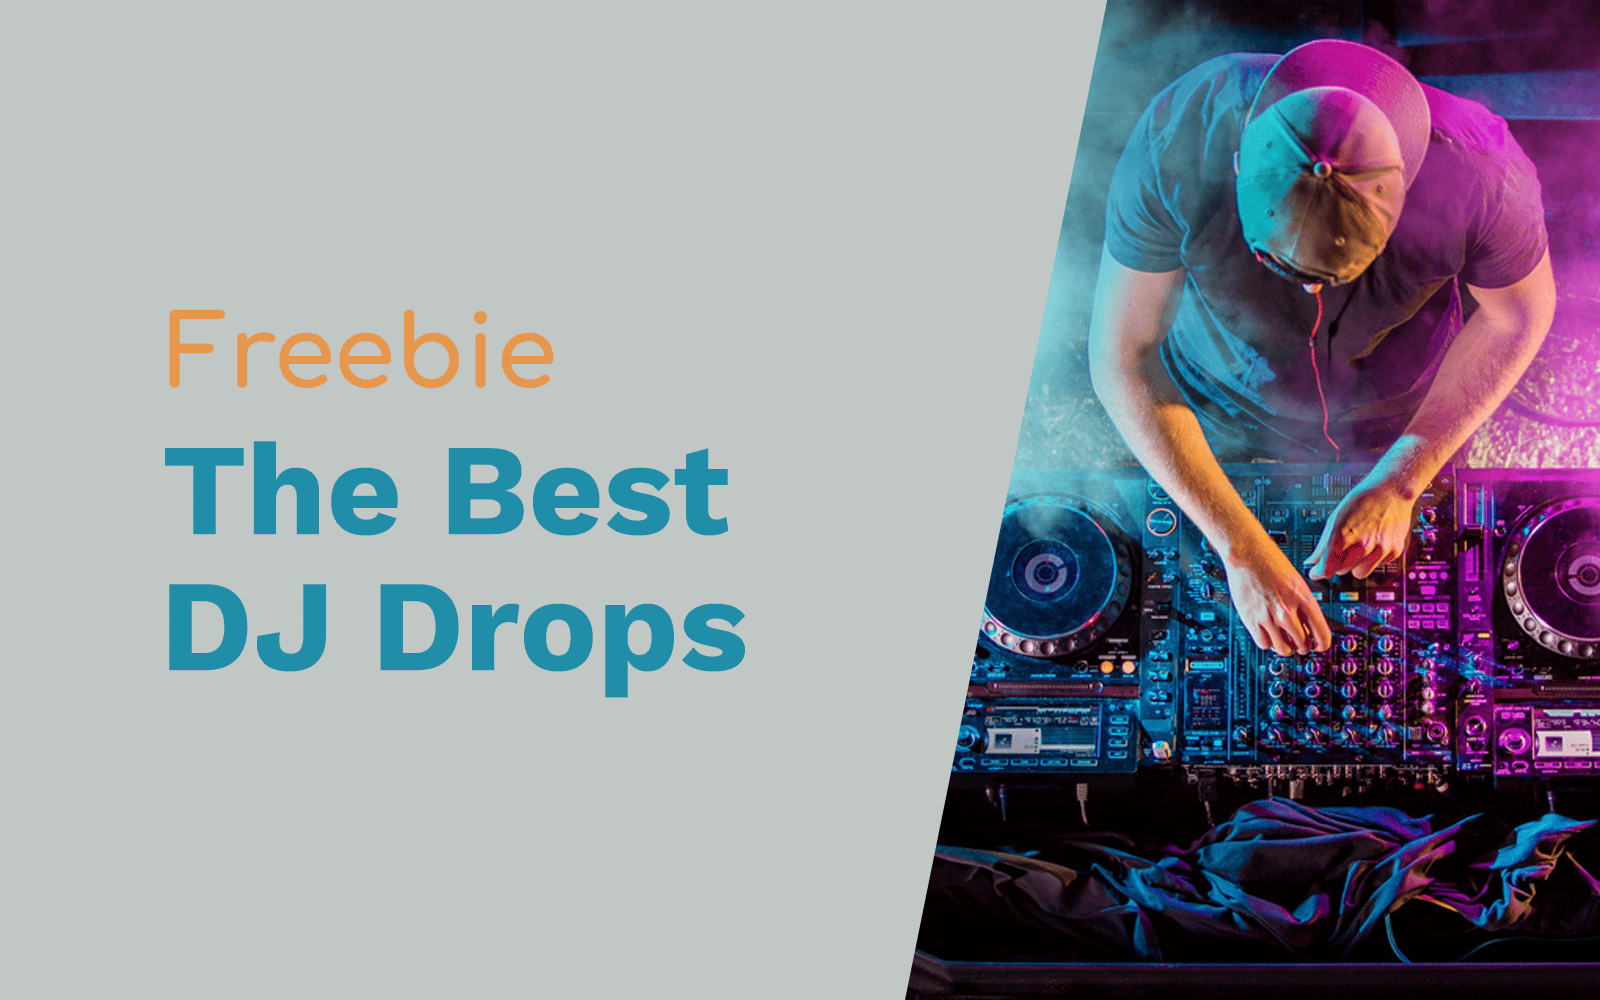 Free DJ Drops – The Best DJs DJ Drops dj drops Music Radio Creative